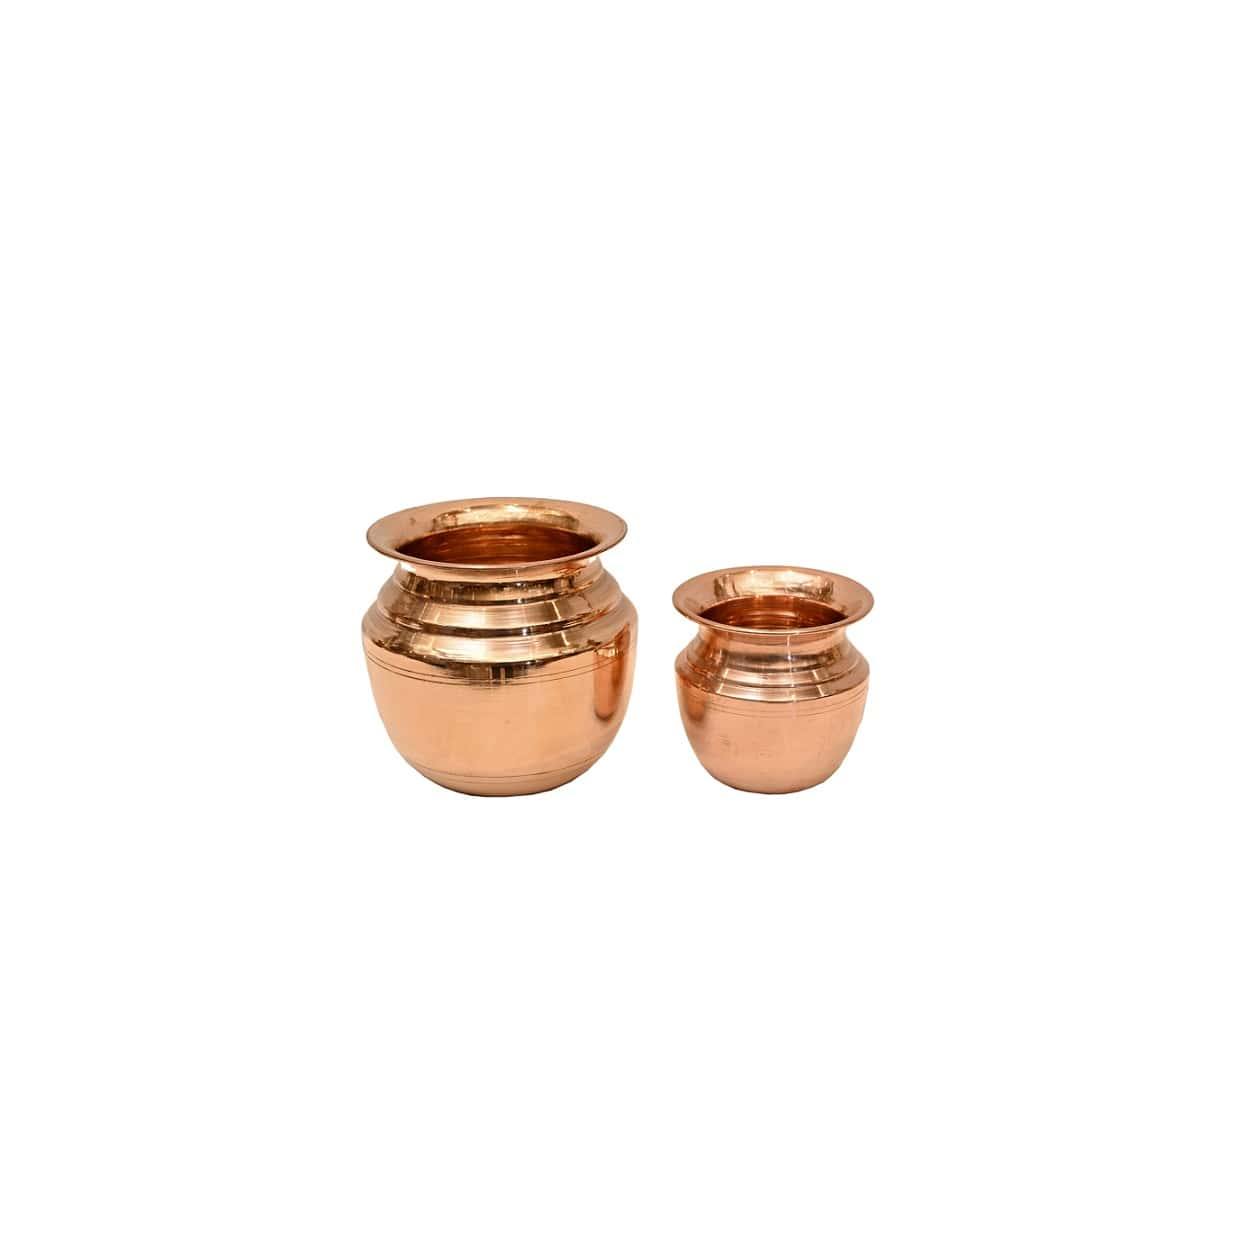 Copper Lota (4 & 5 Inches)